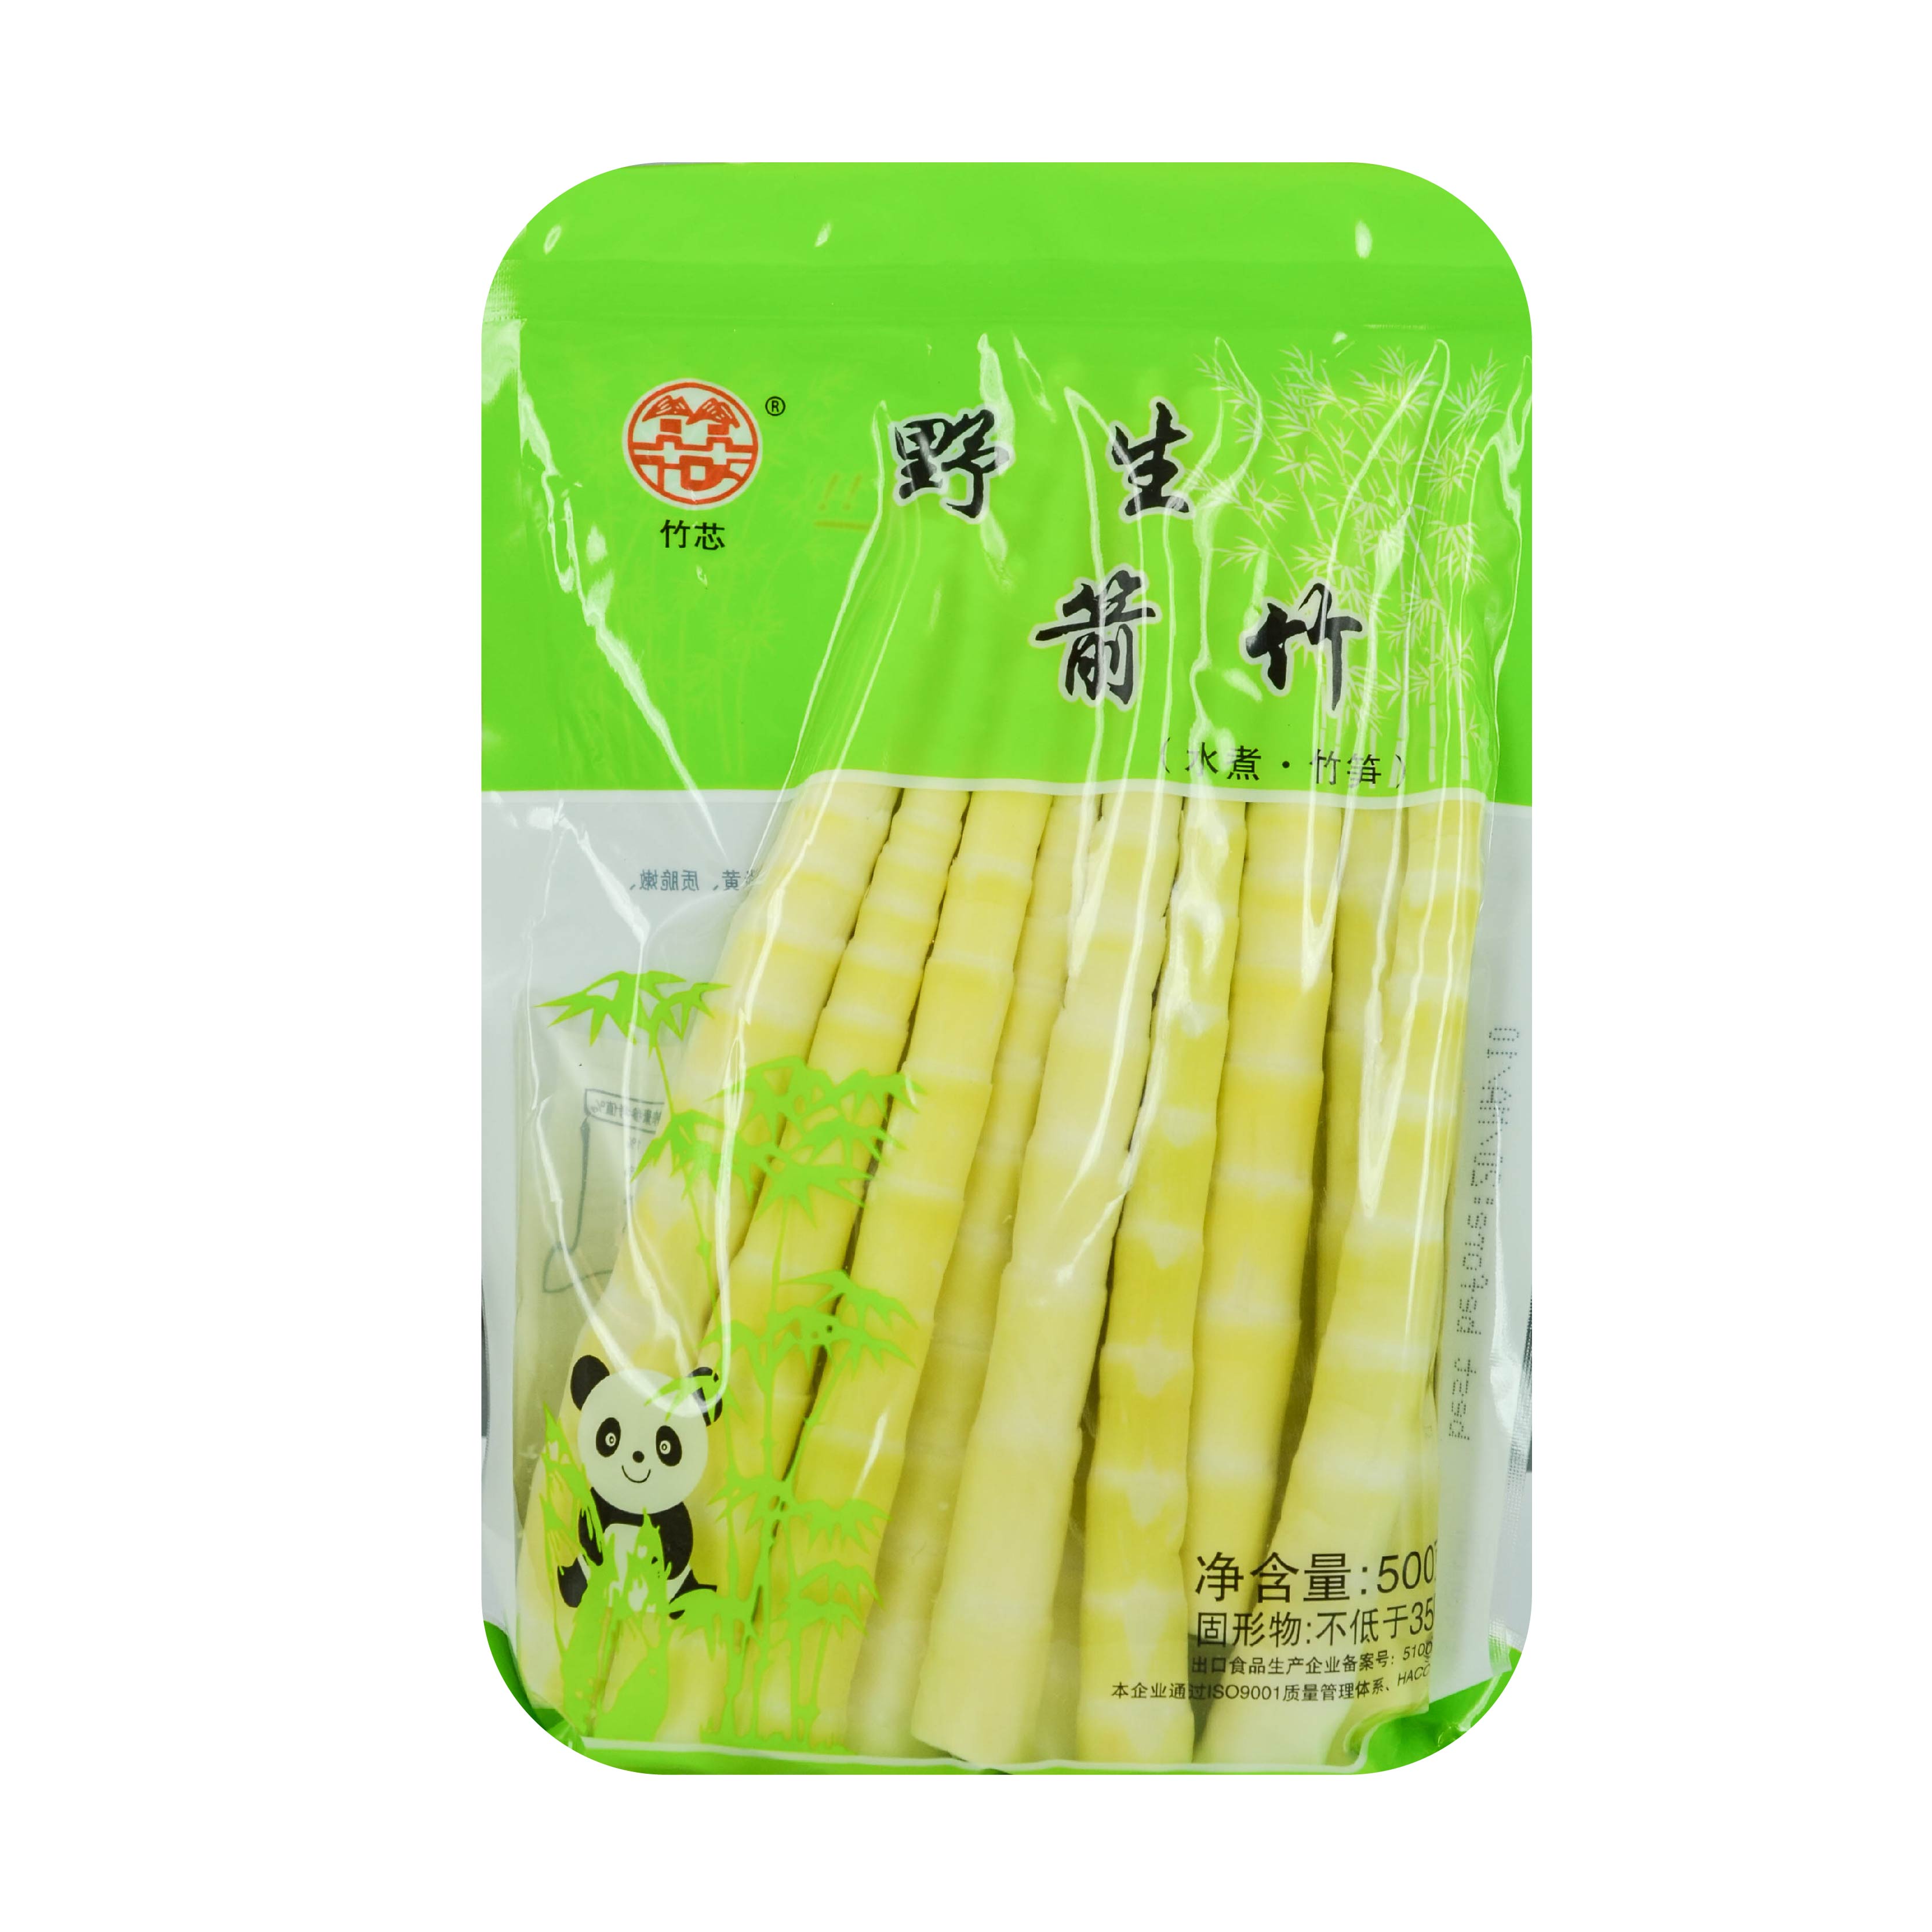 冷藏类:: 冷藏蔬菜:: ZX-Wild Bamboo Shoots 竹芯野生箭竹